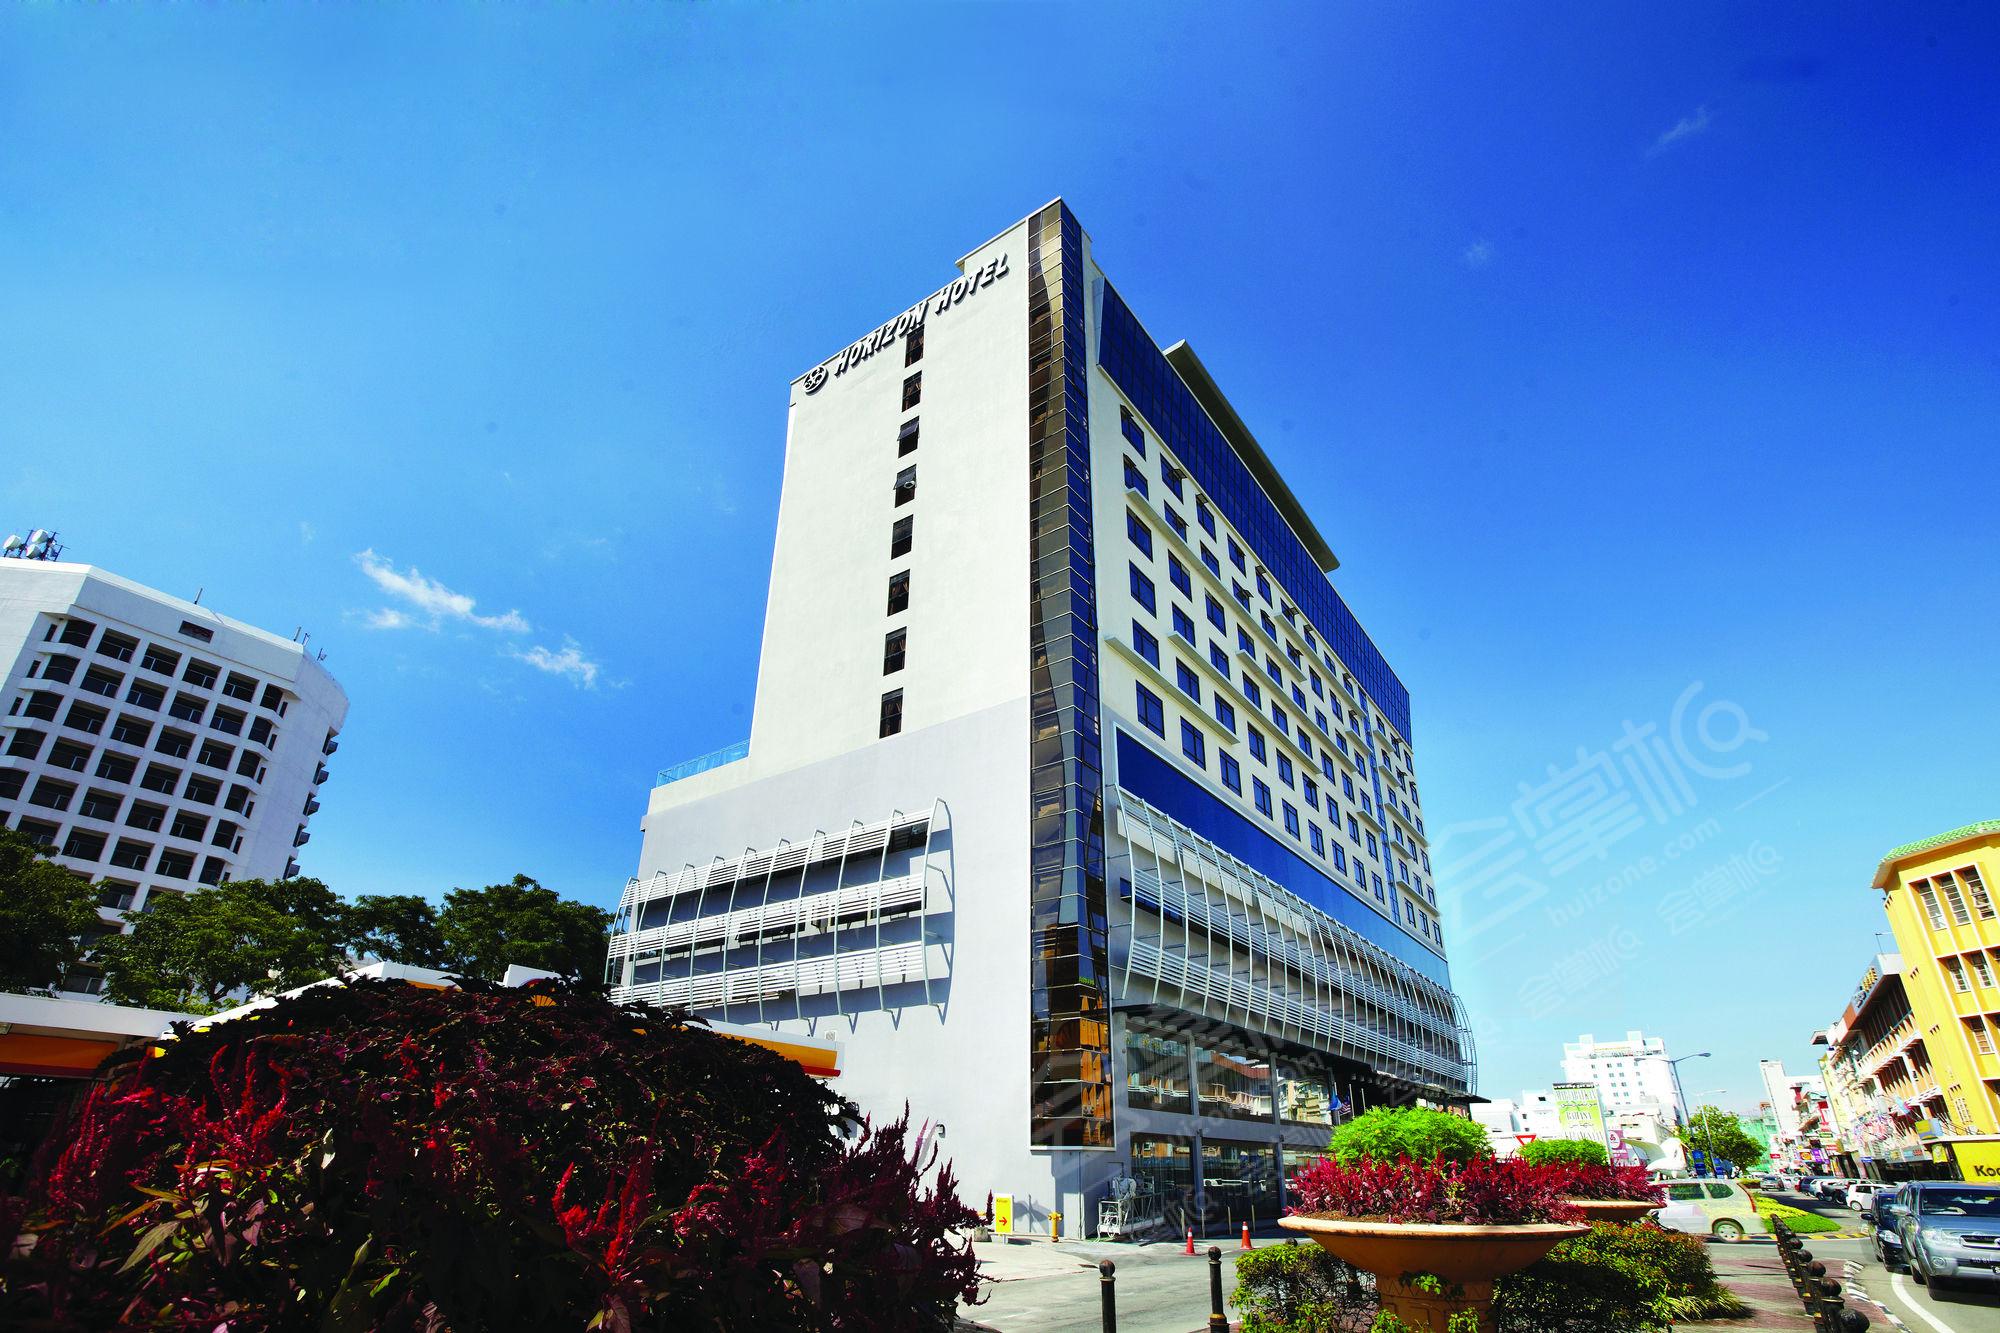 沙巴四星级酒店最大容纳200人的会议场地|豪丽胜酒店(Horizon Hotel)的价格与联系方式